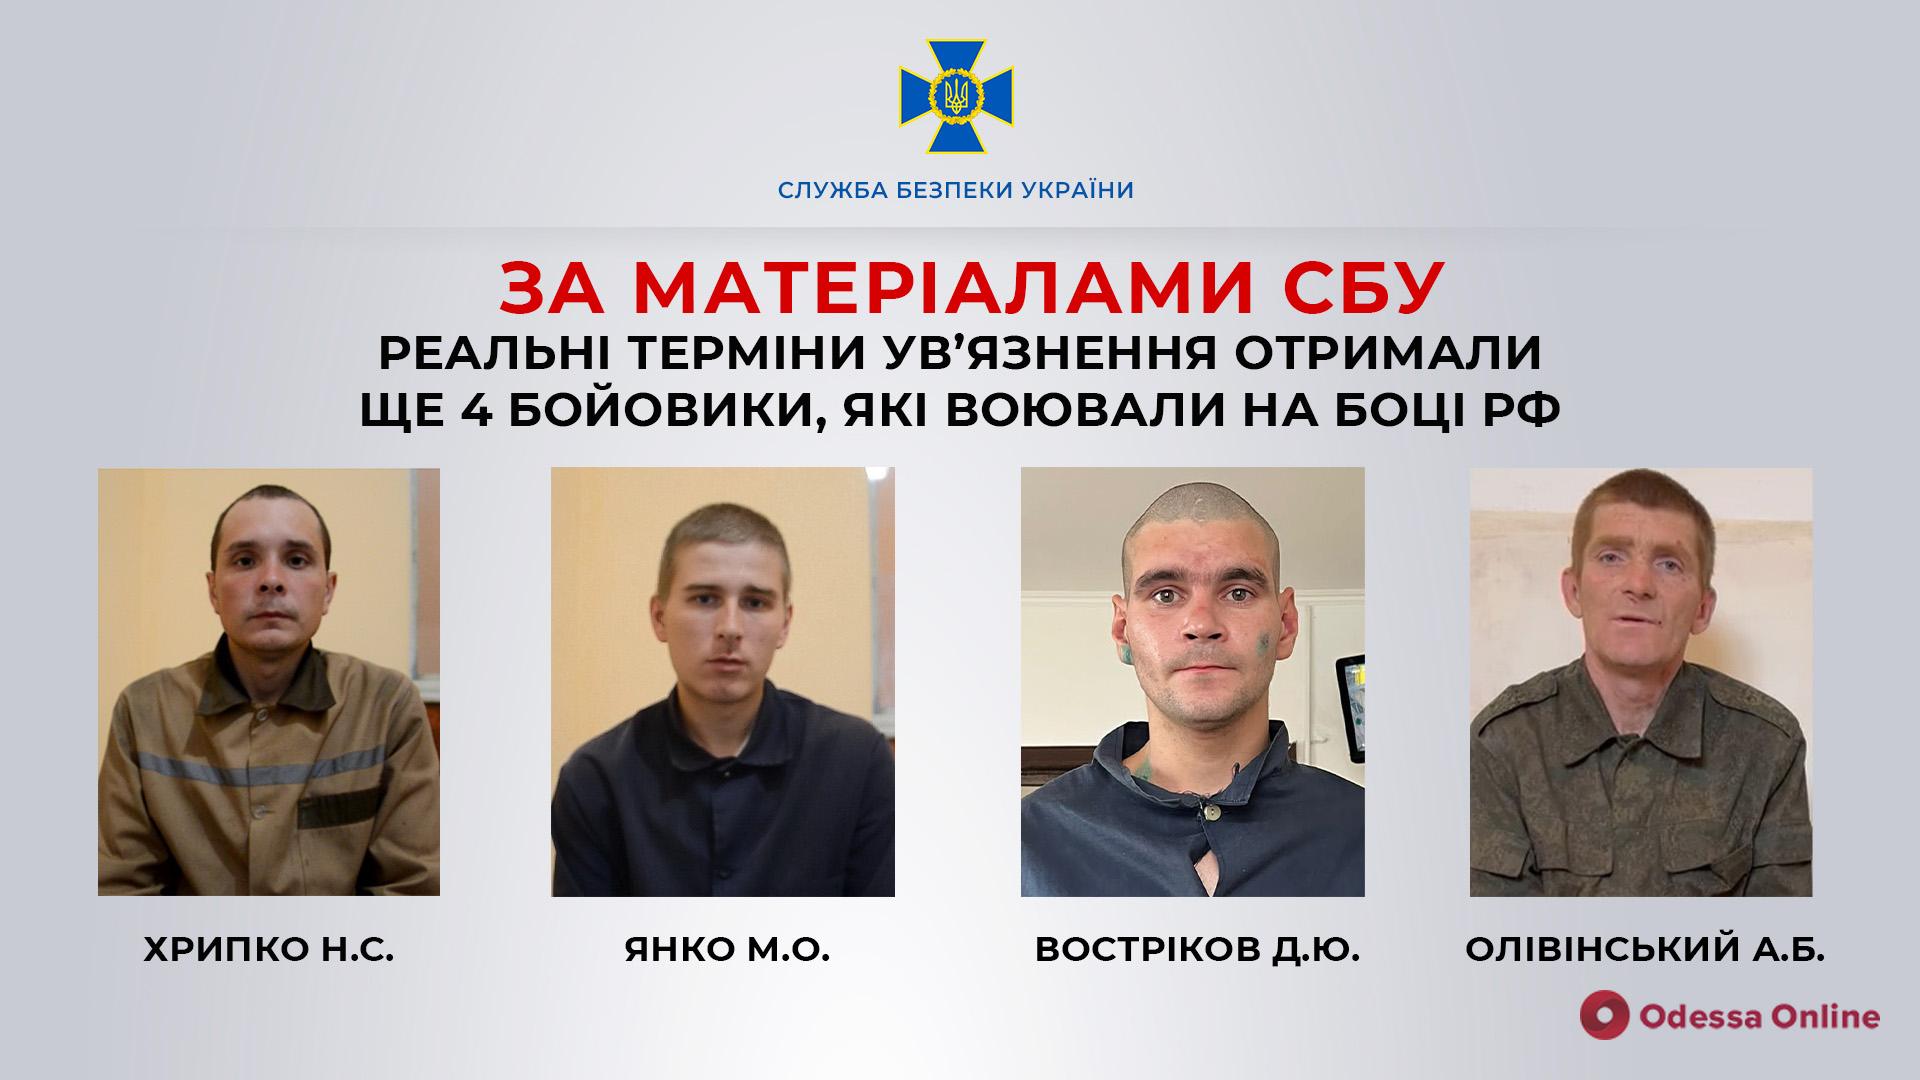 По материалам СБУ реальные сроки заключения получили еще 4 боевика, которые воевали на стороне рф